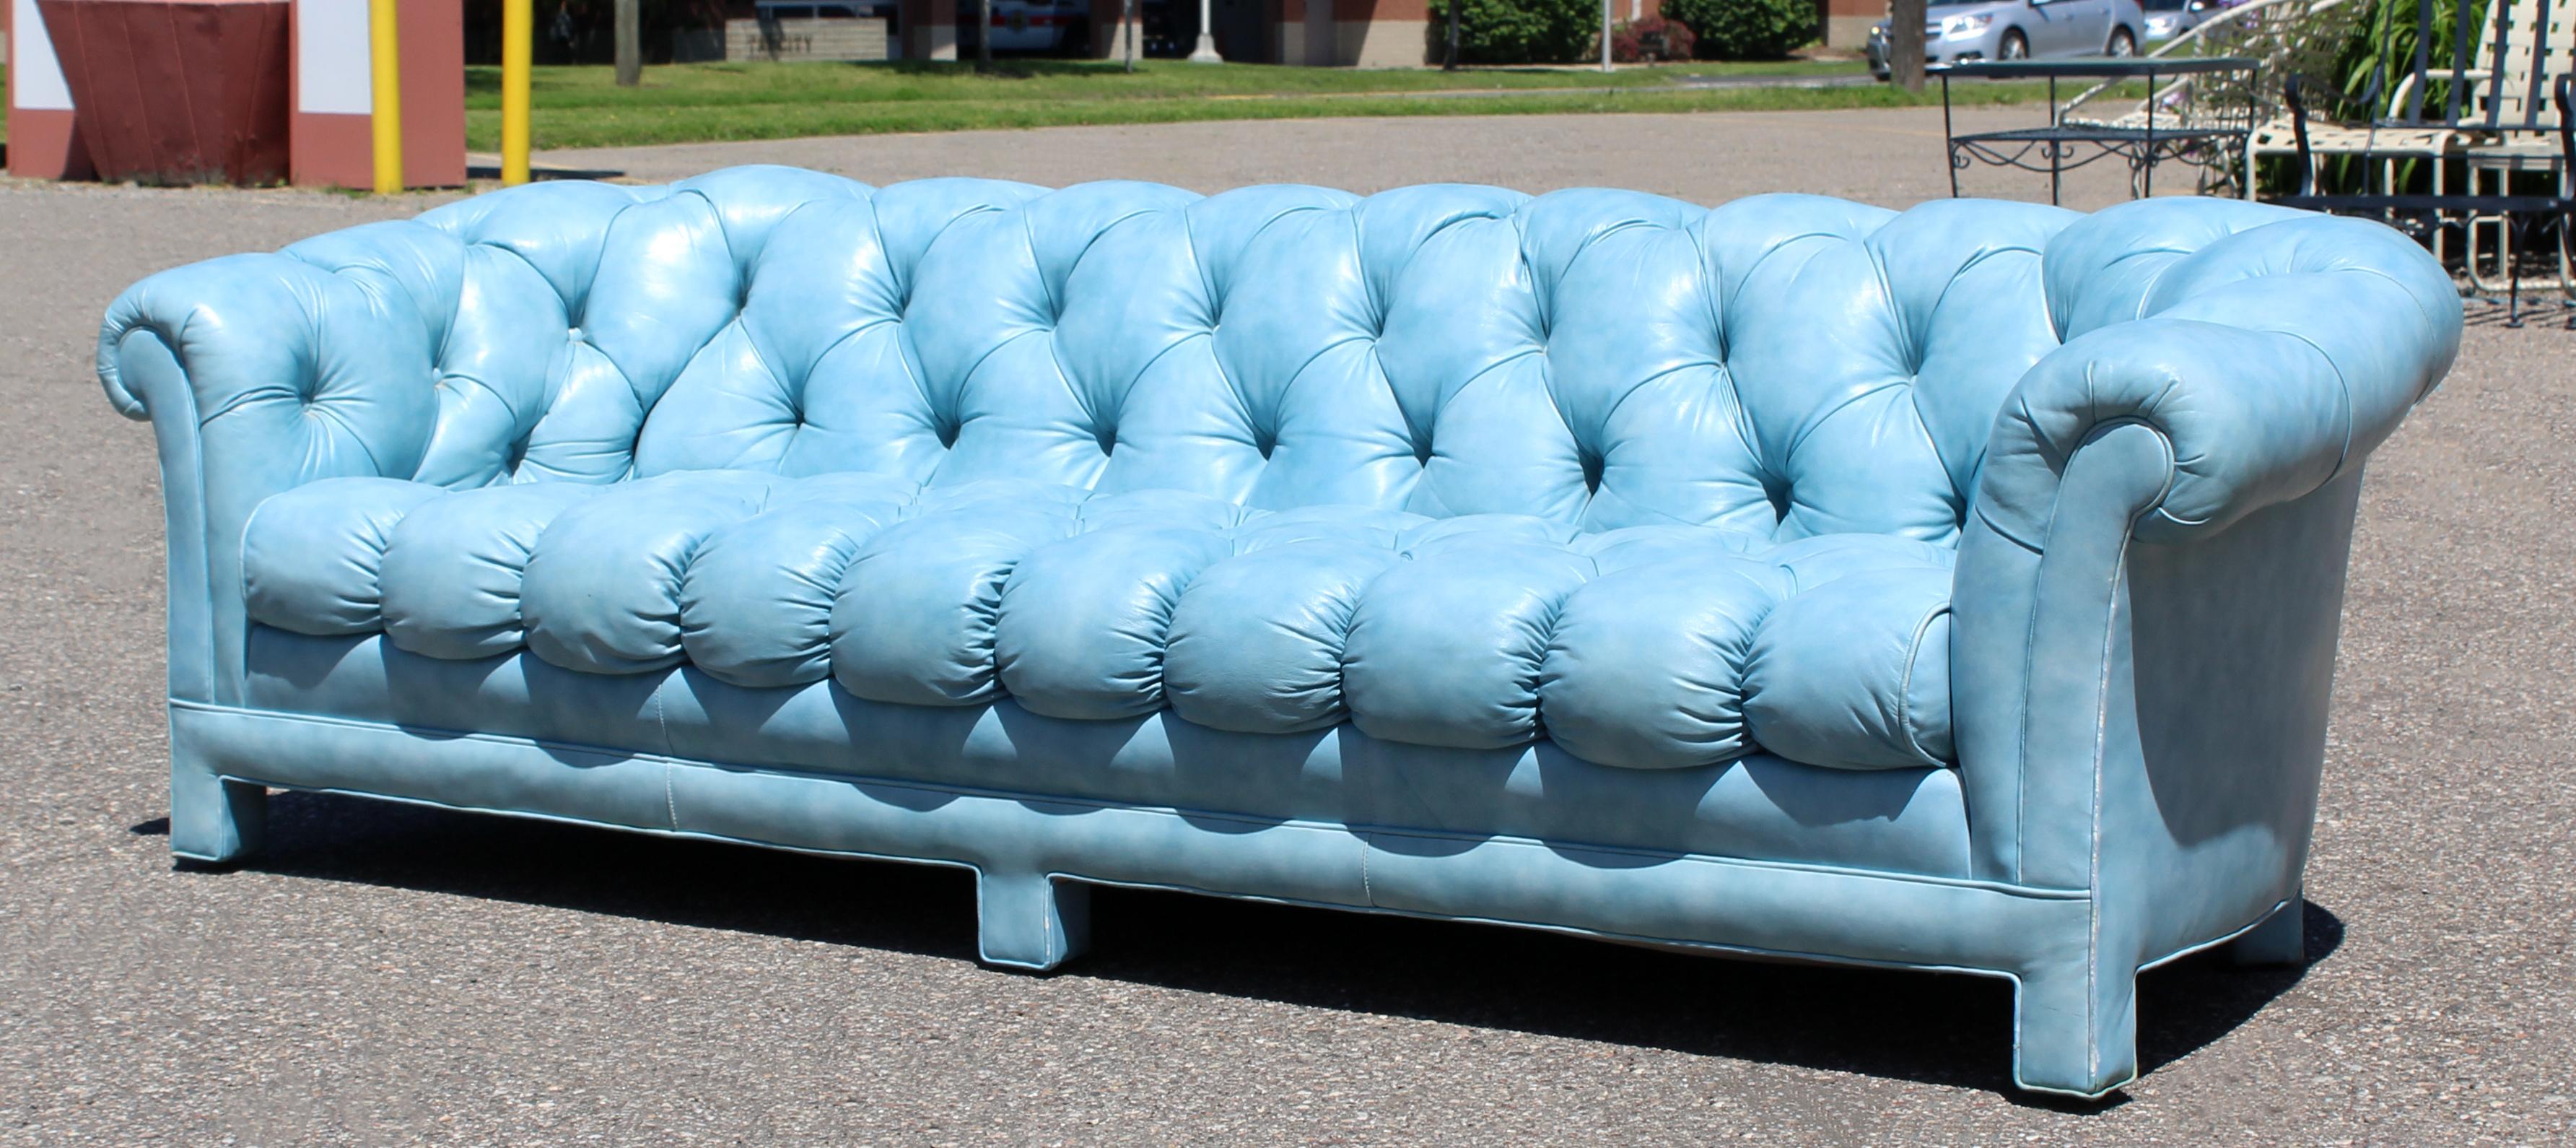 blue leather tufted sofa